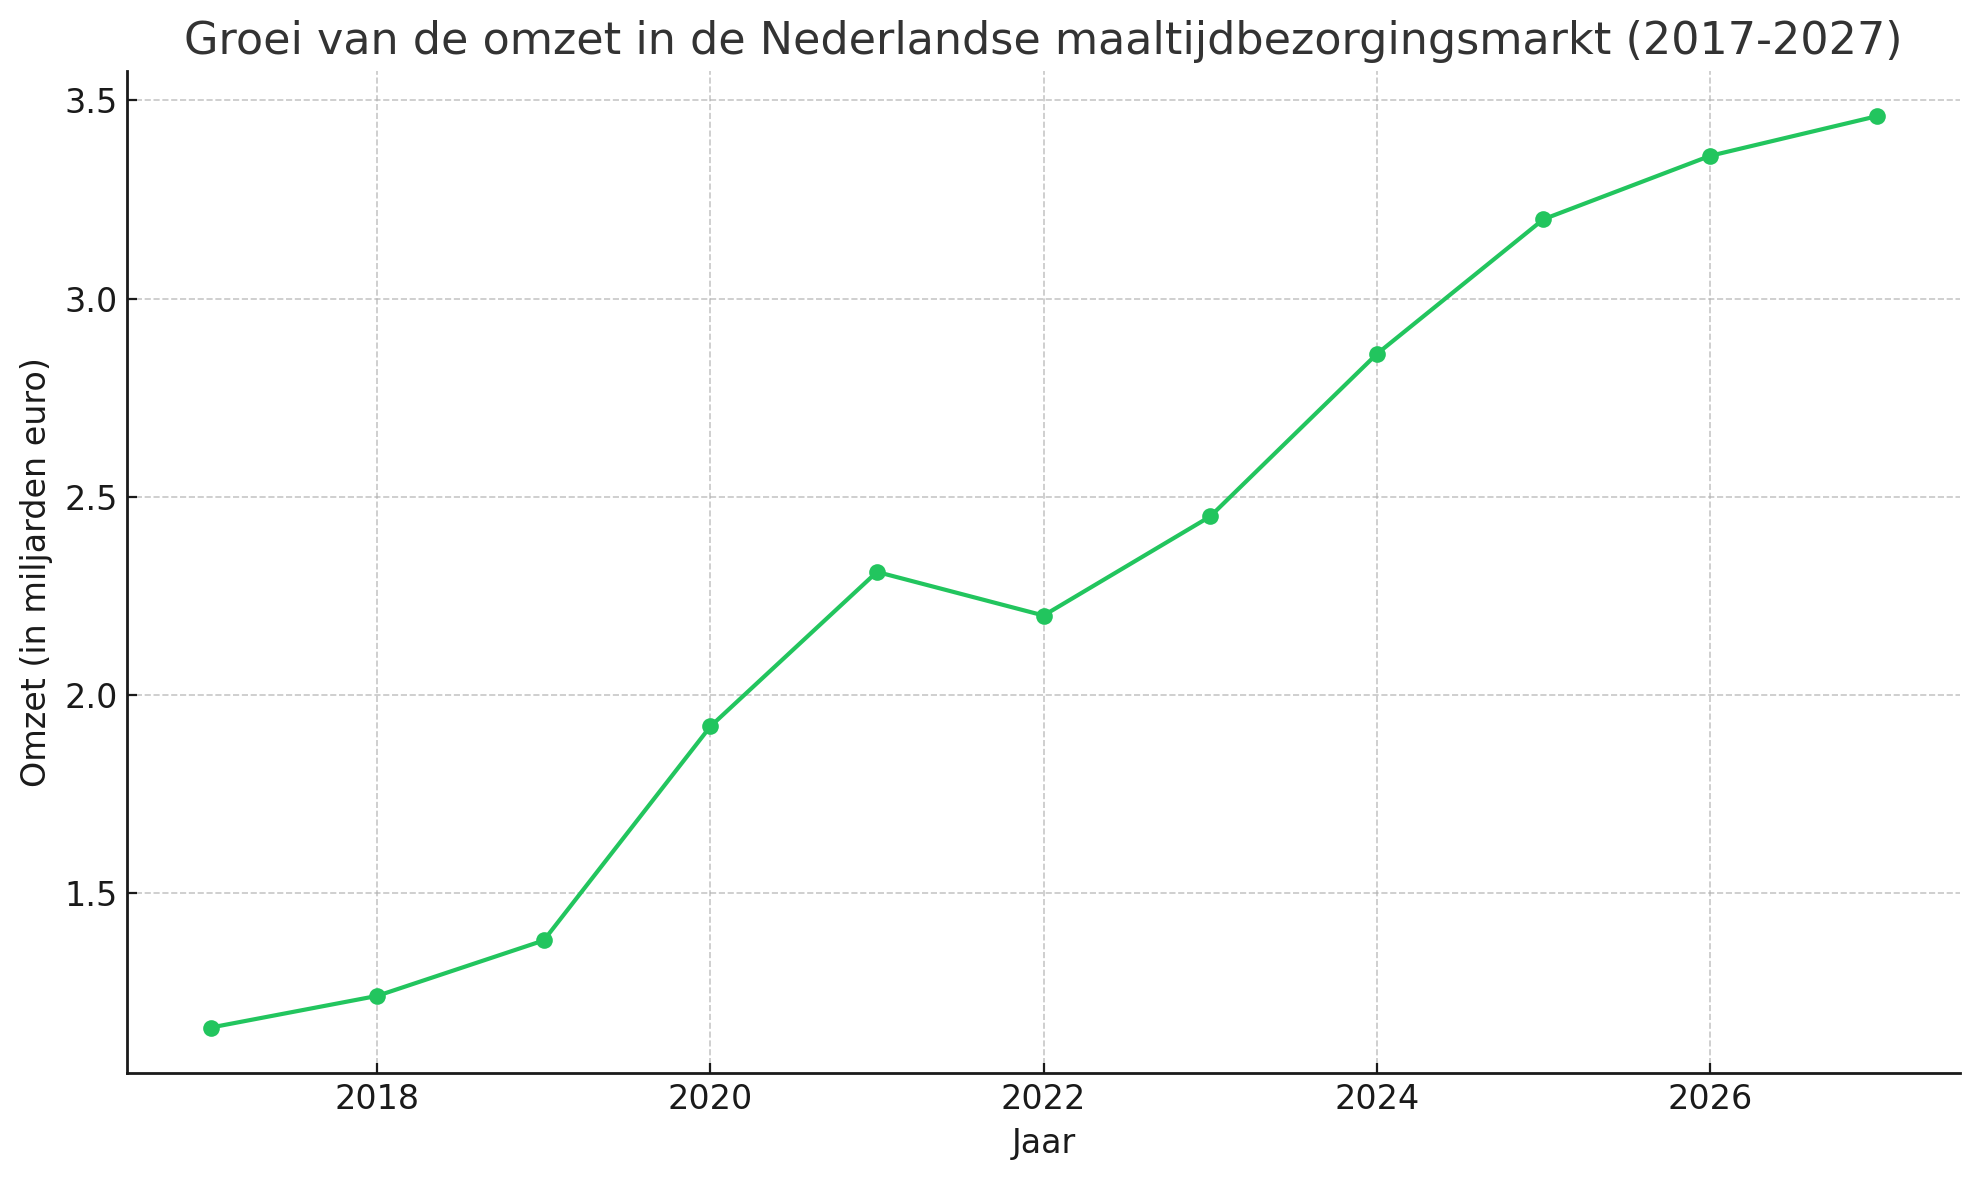 Groei van de omzet in de Nederlandse maaltijdbezorgingsmarkt